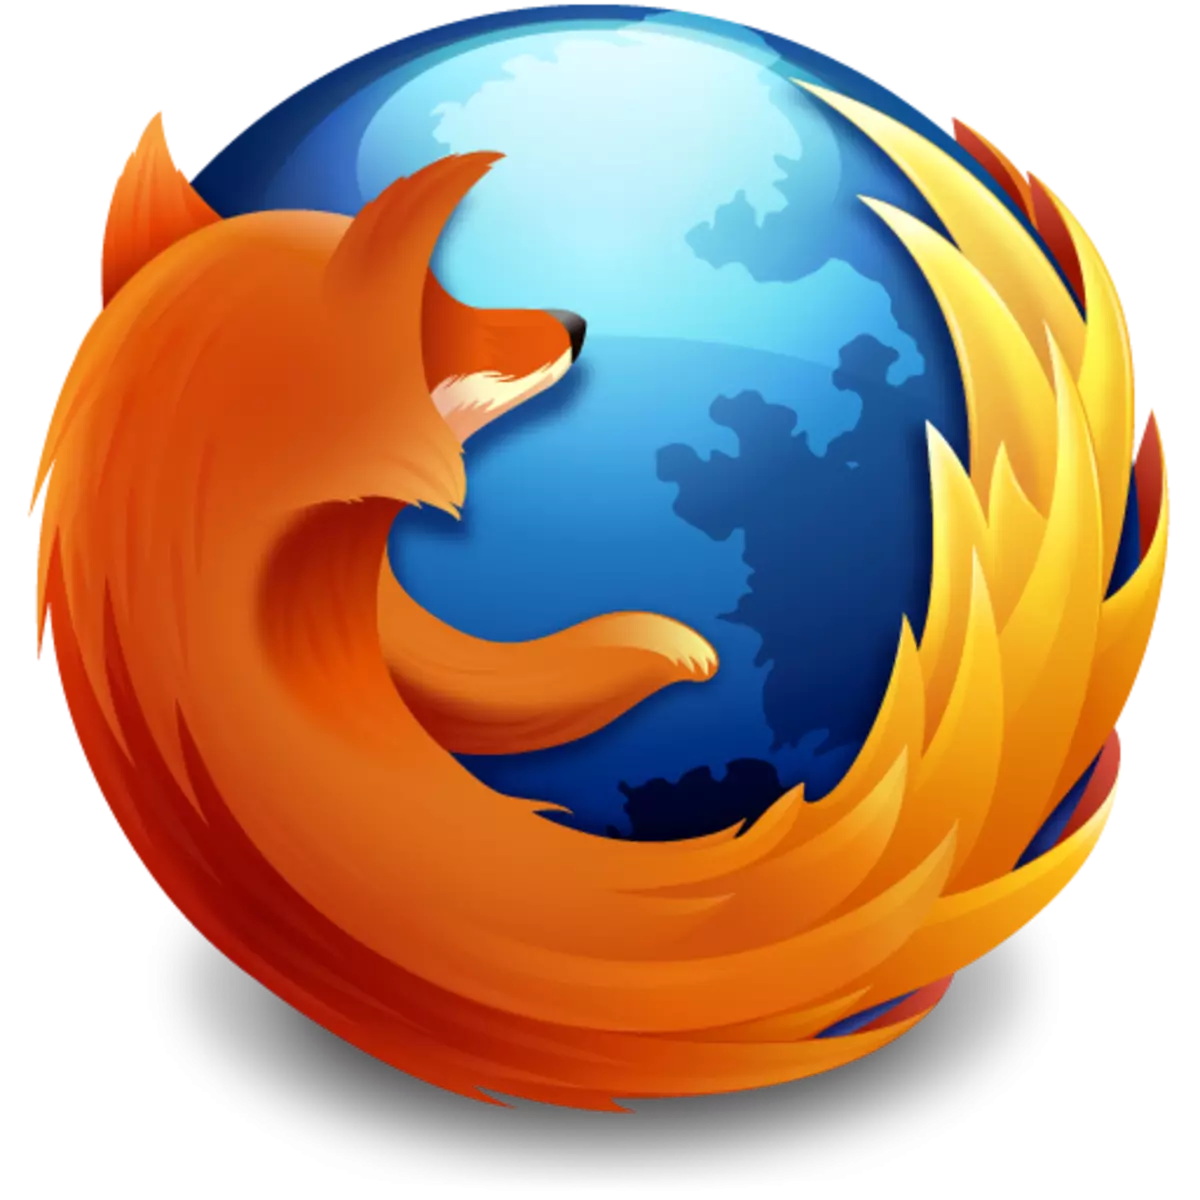 Firefox: Kuwonetsa izi kumafuna mapulogalamu